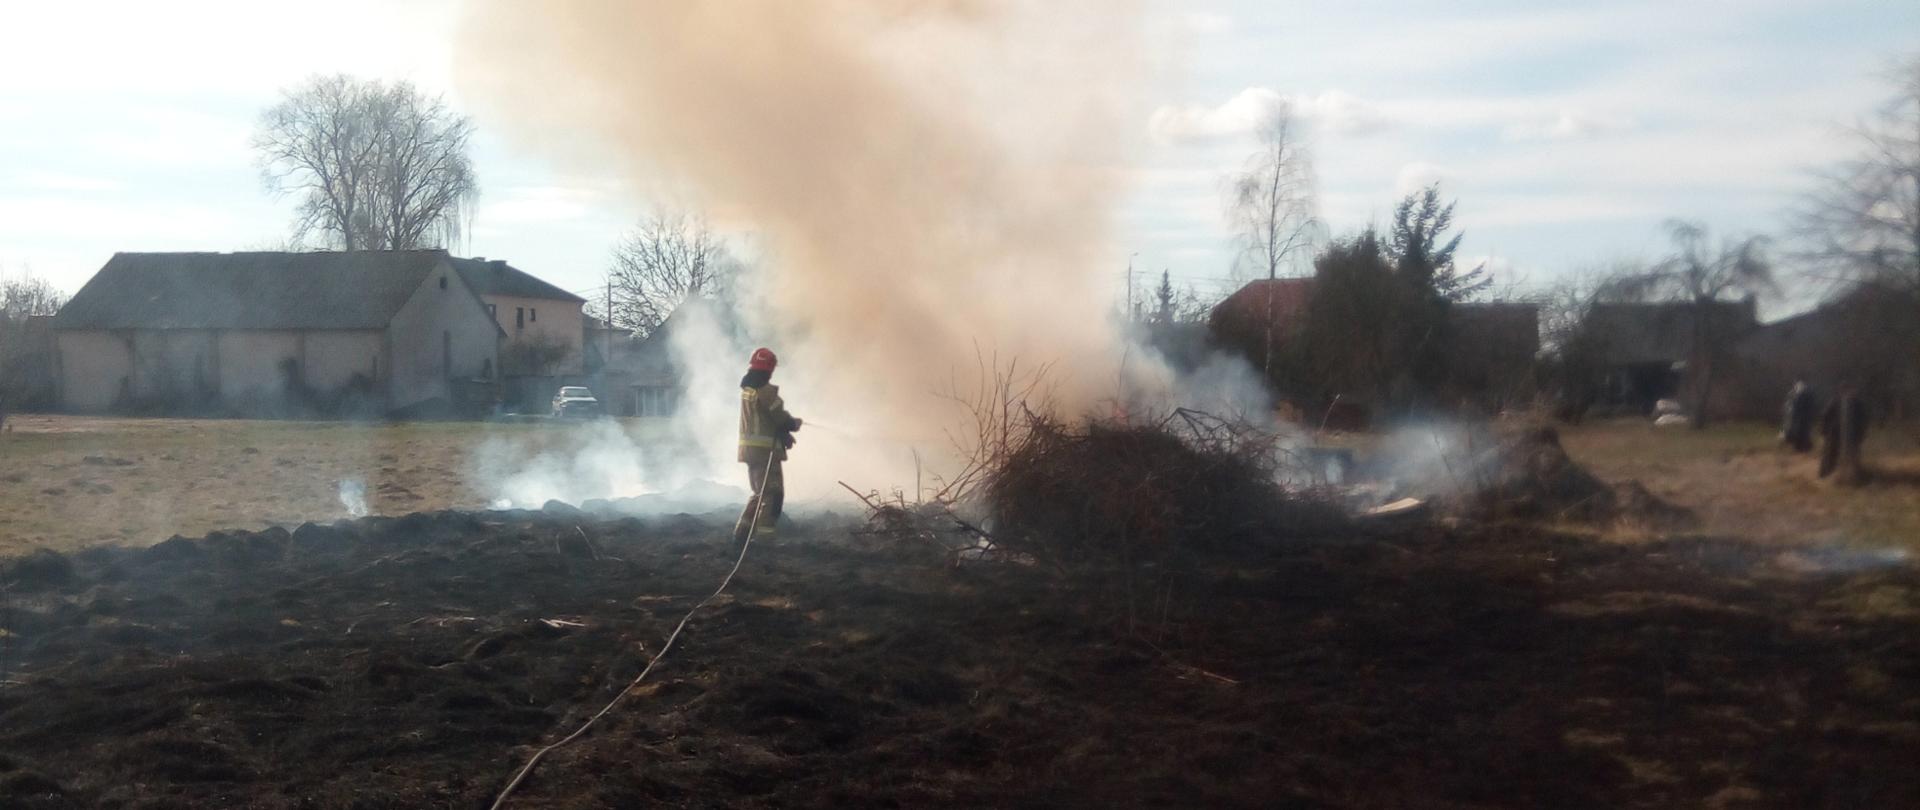 Strażak gaszący palącą się stertę gałęzi, wokół wypalona trawa. W tle zabudowania.